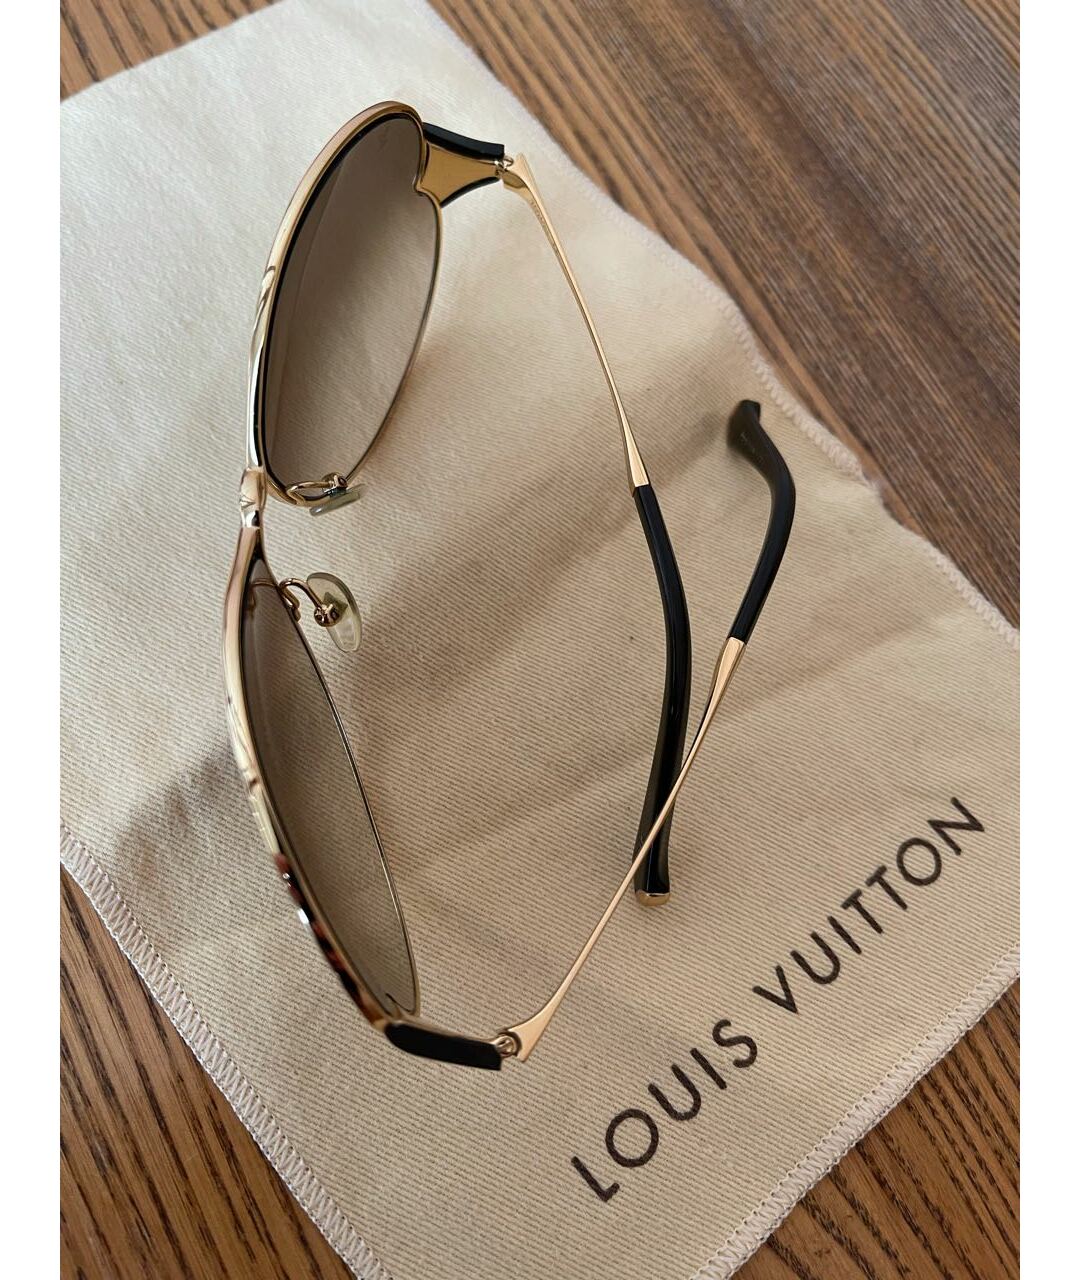 LOUIS VUITTON PRE-OWNED Золотые металлические солнцезащитные очки, фото 3